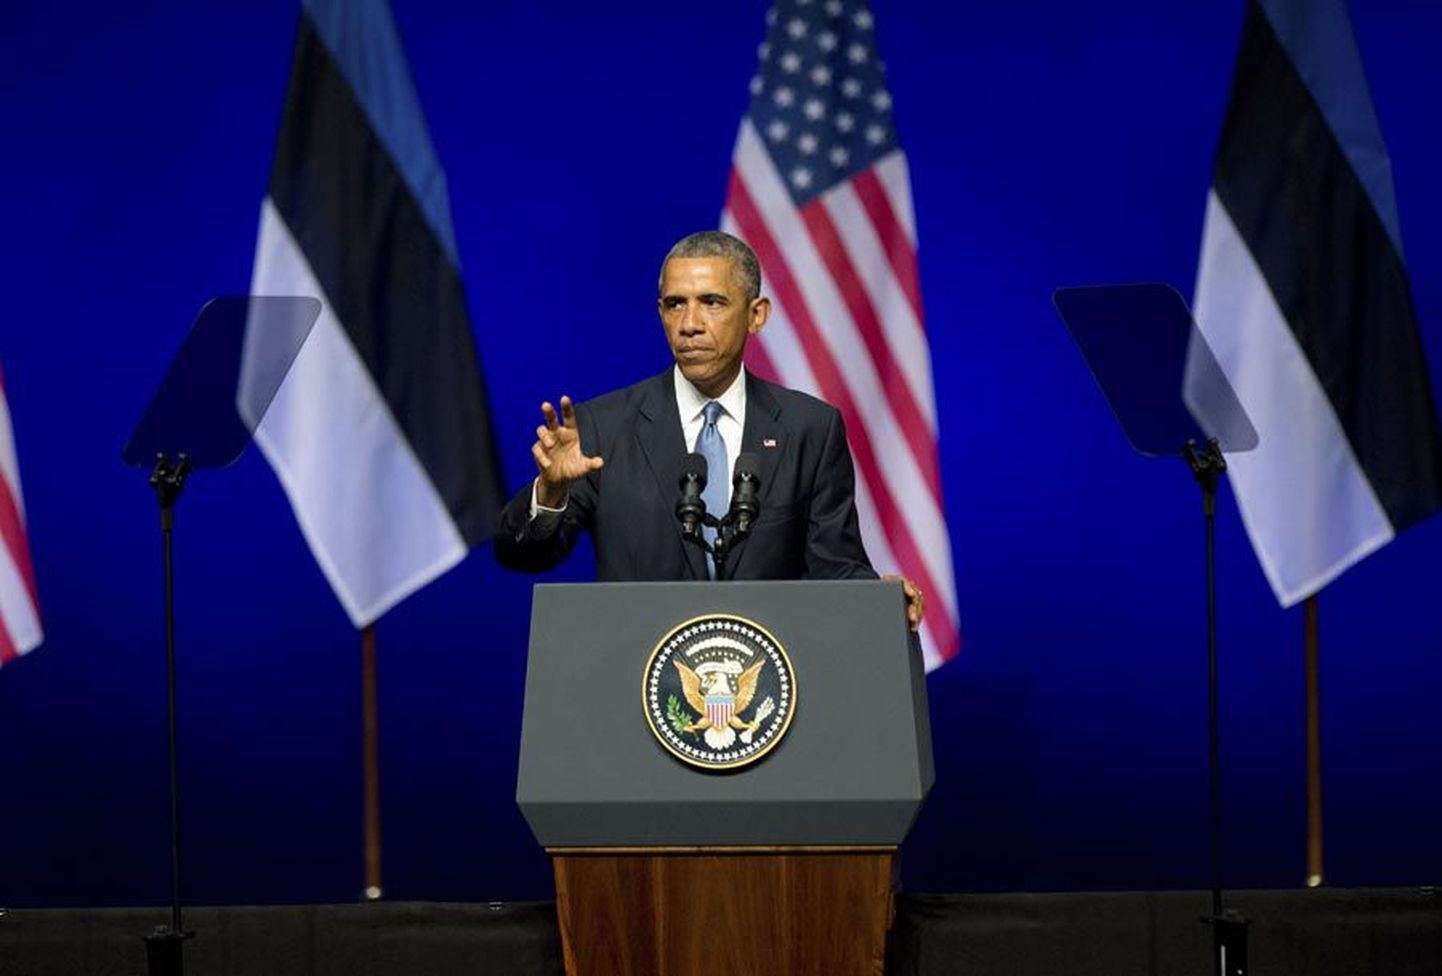 Barack Obama pidas Tallinnas Nordea kontserdimajas kõne, mida televisioon otsepildis üle kandis.